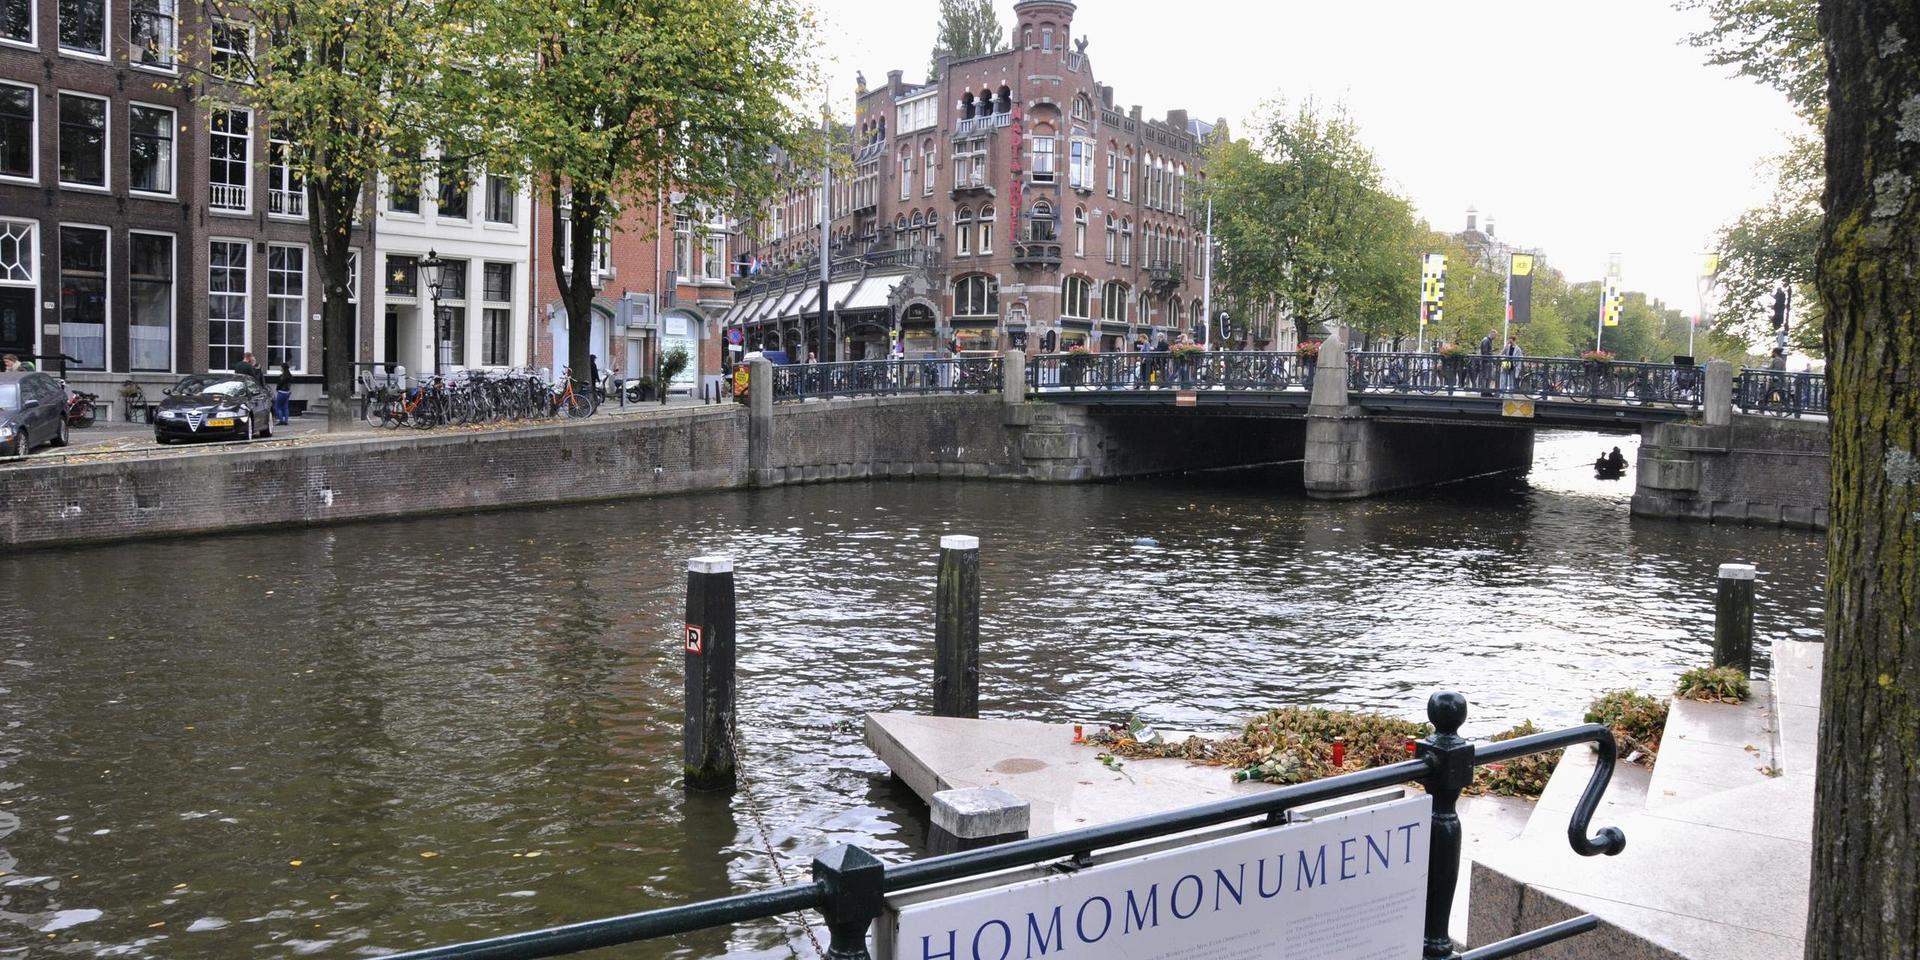 Monumentet i Amsterdam gav inspiration till ett liknande även i Göteborg.